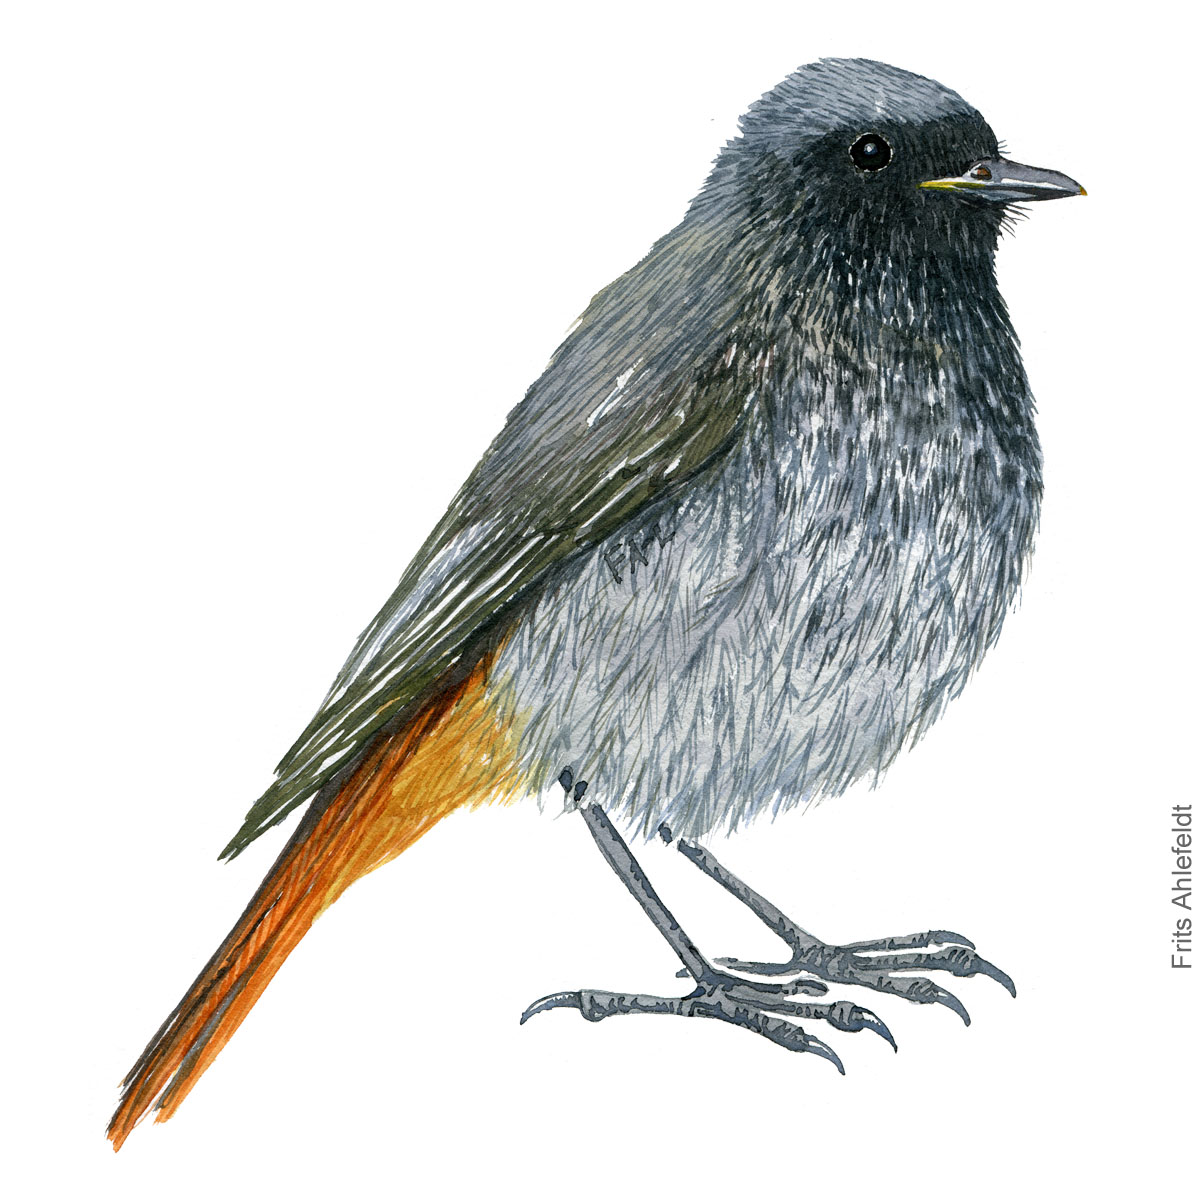 Husroedstjert - Black redstart bird watercolor illustration. Artwork by Frits Ahlefeldt. Fugle akvarel